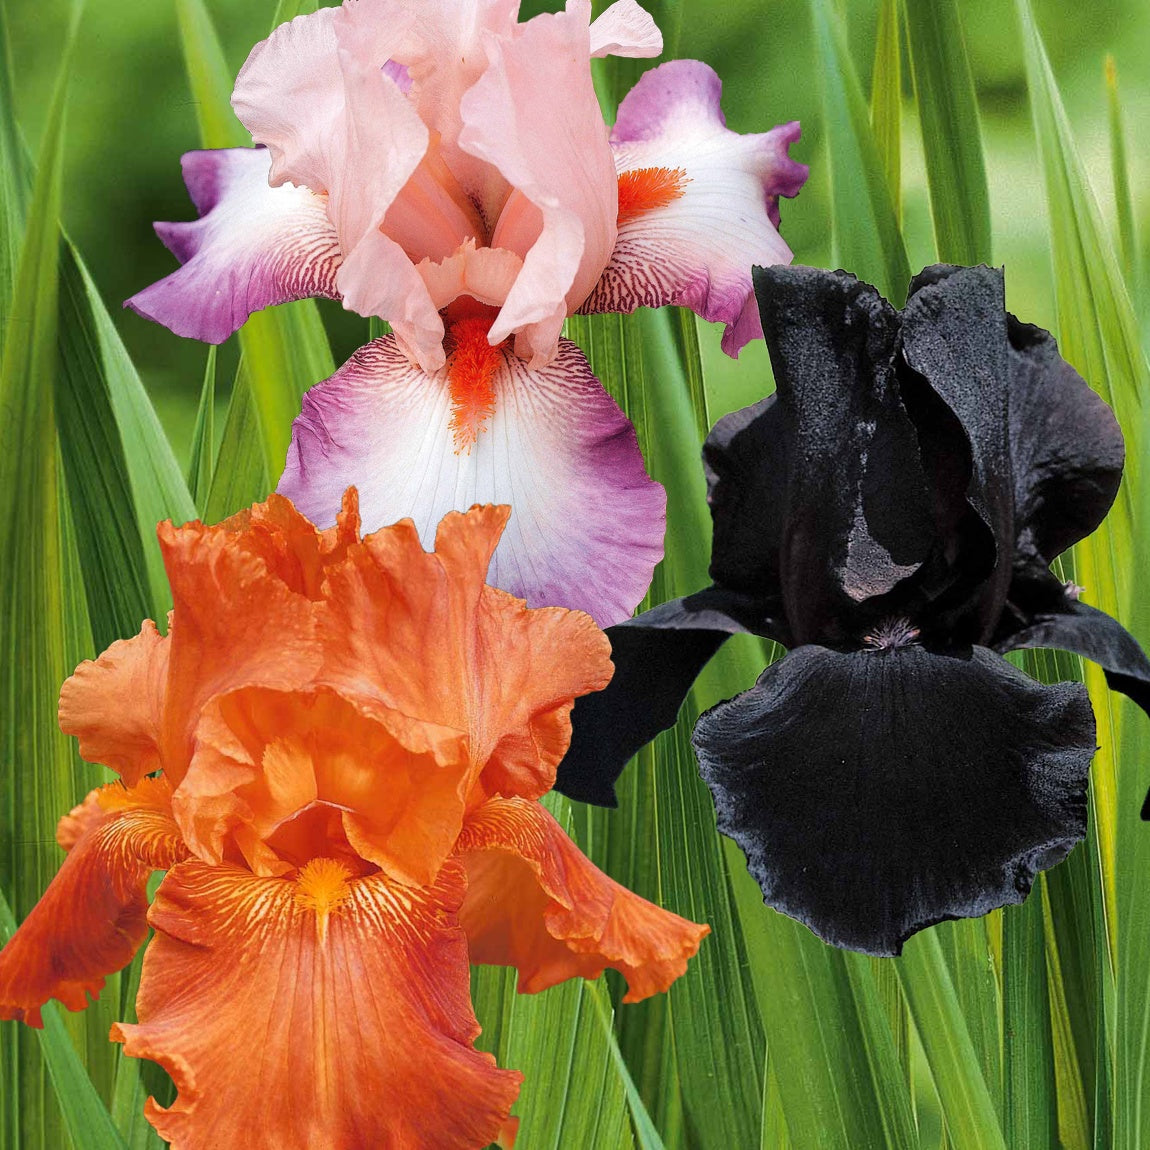 6 Iris de jardin noire, orange, rosé en mélange - 2iris profondeur de champ (depht of field) + 2 ir - Plantes vivaces